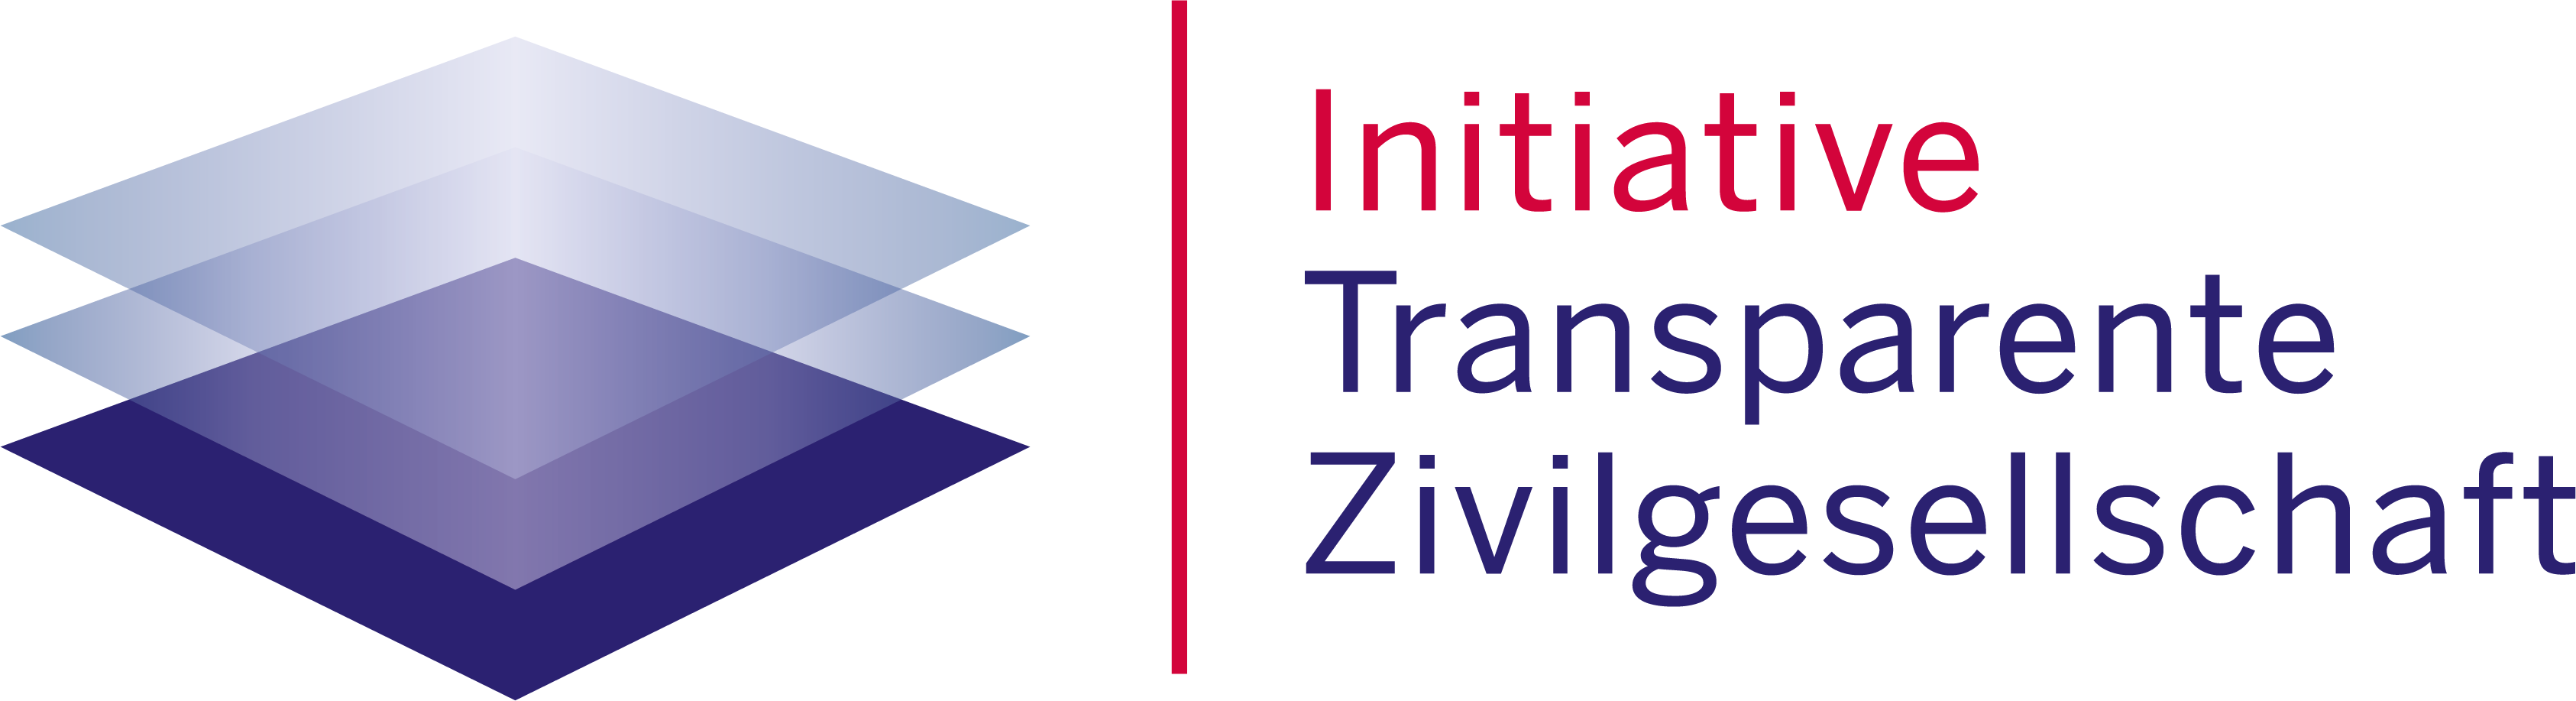 Symbolbild der Initiative transparente Zivilgesellschaft